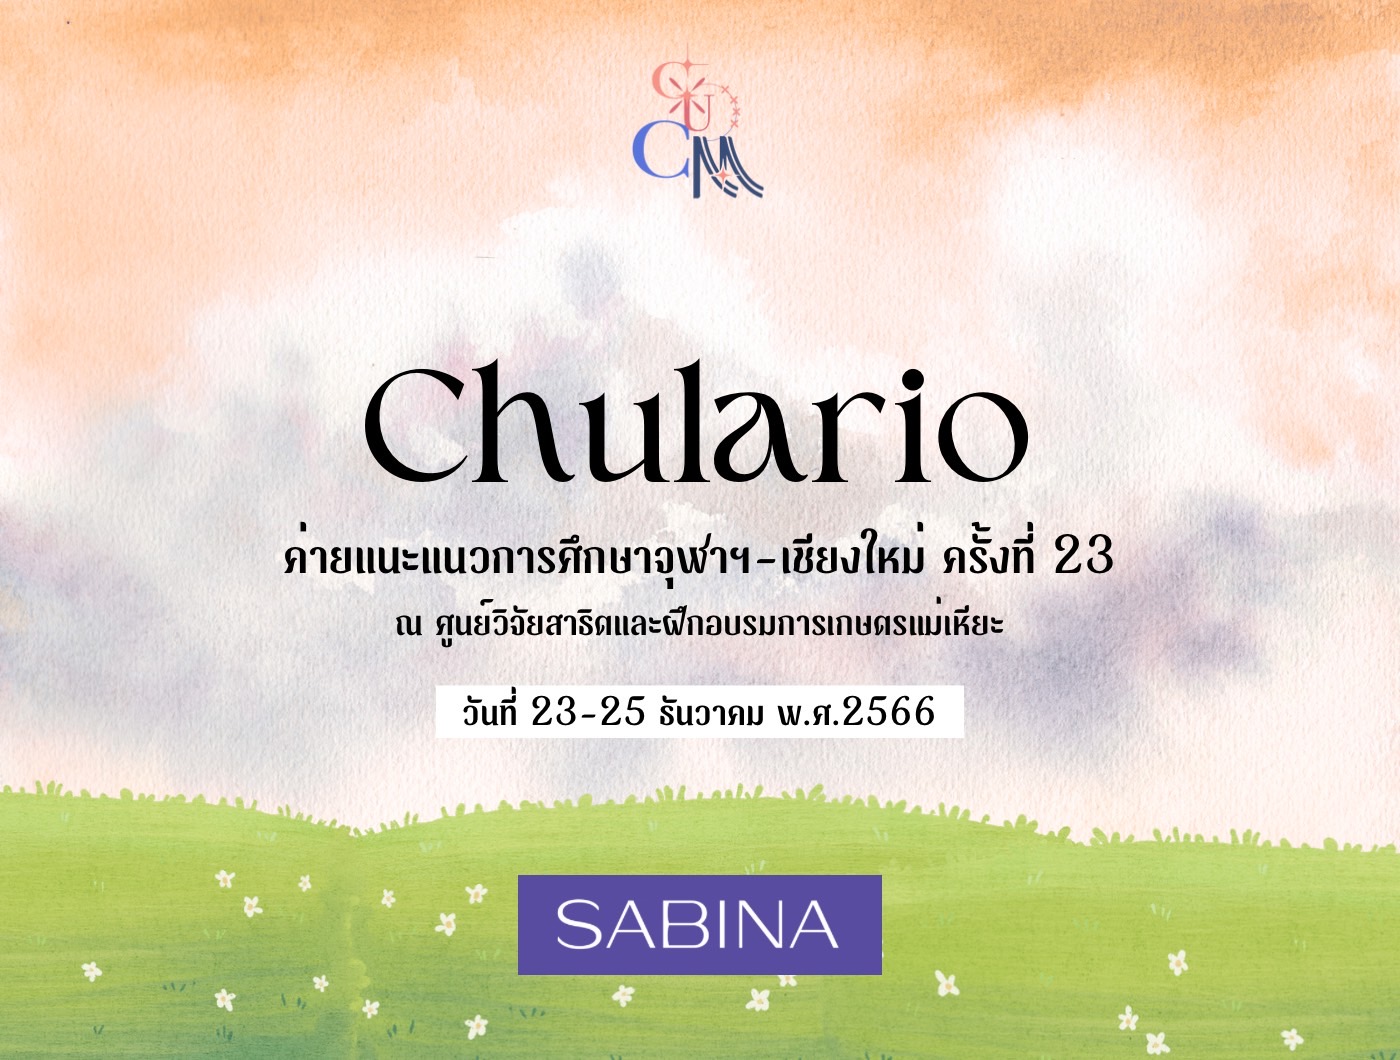 บริษัท ซาบีน่า ฟาร์อีสท์ จำกัด สนับสนุนกิจกรรมค่ายแนะแนว การศึกษาจุฬาฯ – เชียงใหม่ ครั้งที่ 23 (Chula – Chiang Mai Camp 23rd Sponsorship)